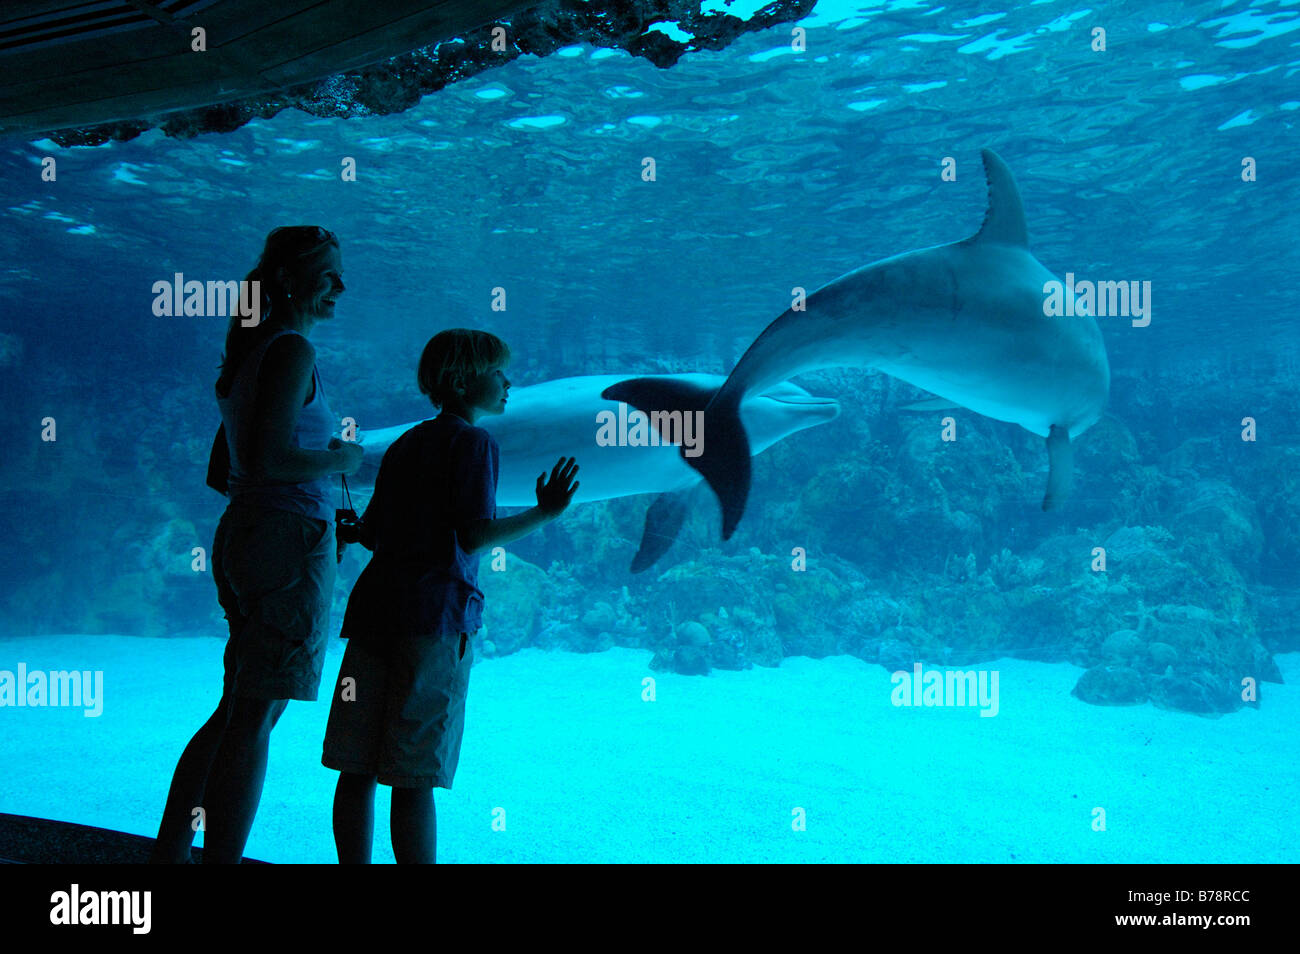 Dolphines, SeaWorld Adventure Park, Orlando, Floride, USA, Amérique du Nord Banque D'Images